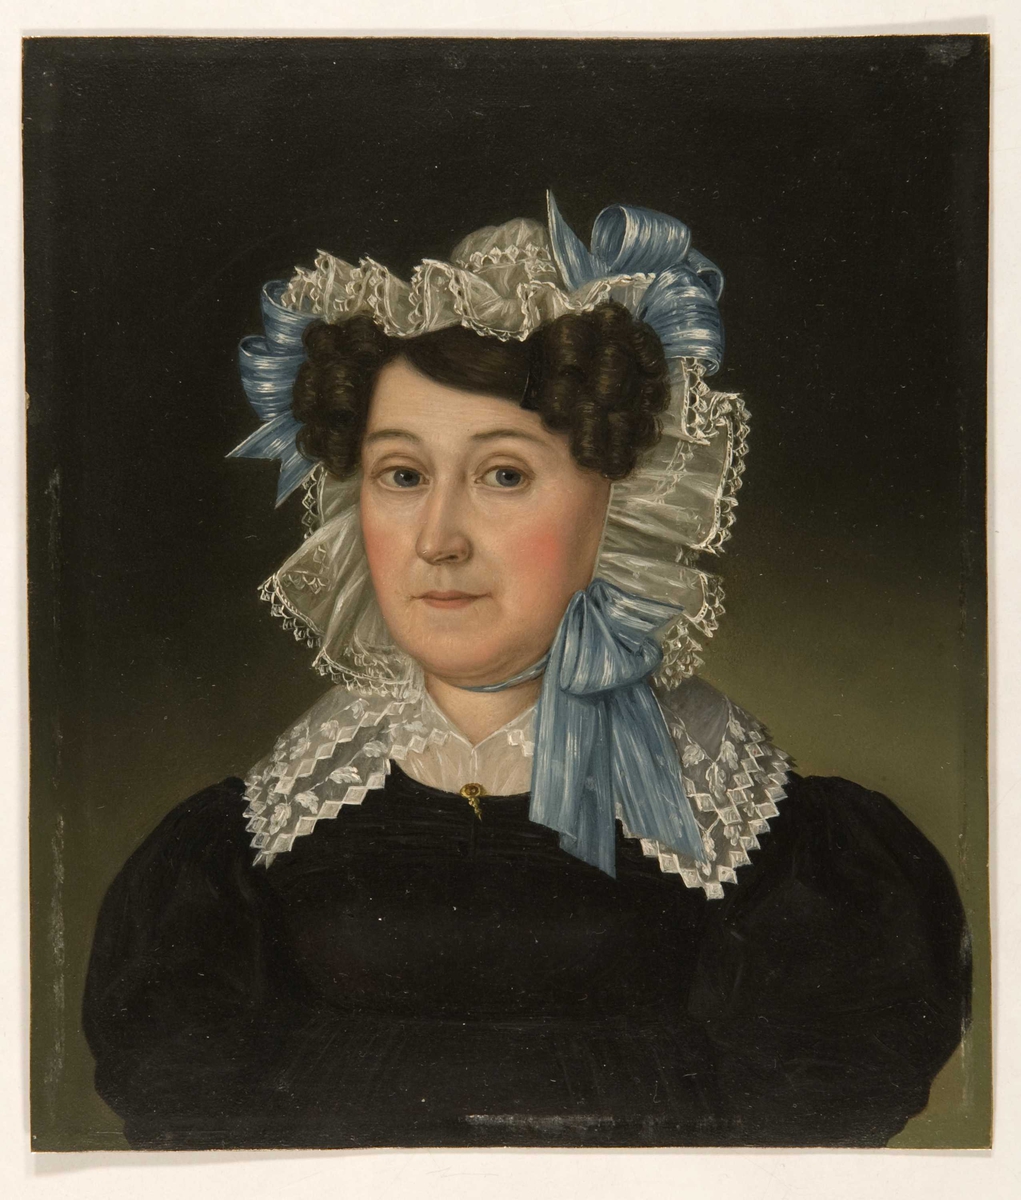 Brystportrett av Margery Vibe (1775-1852) iført svart kjole med hvit kniplingskrage og hvit kyse med blå silkebånd.